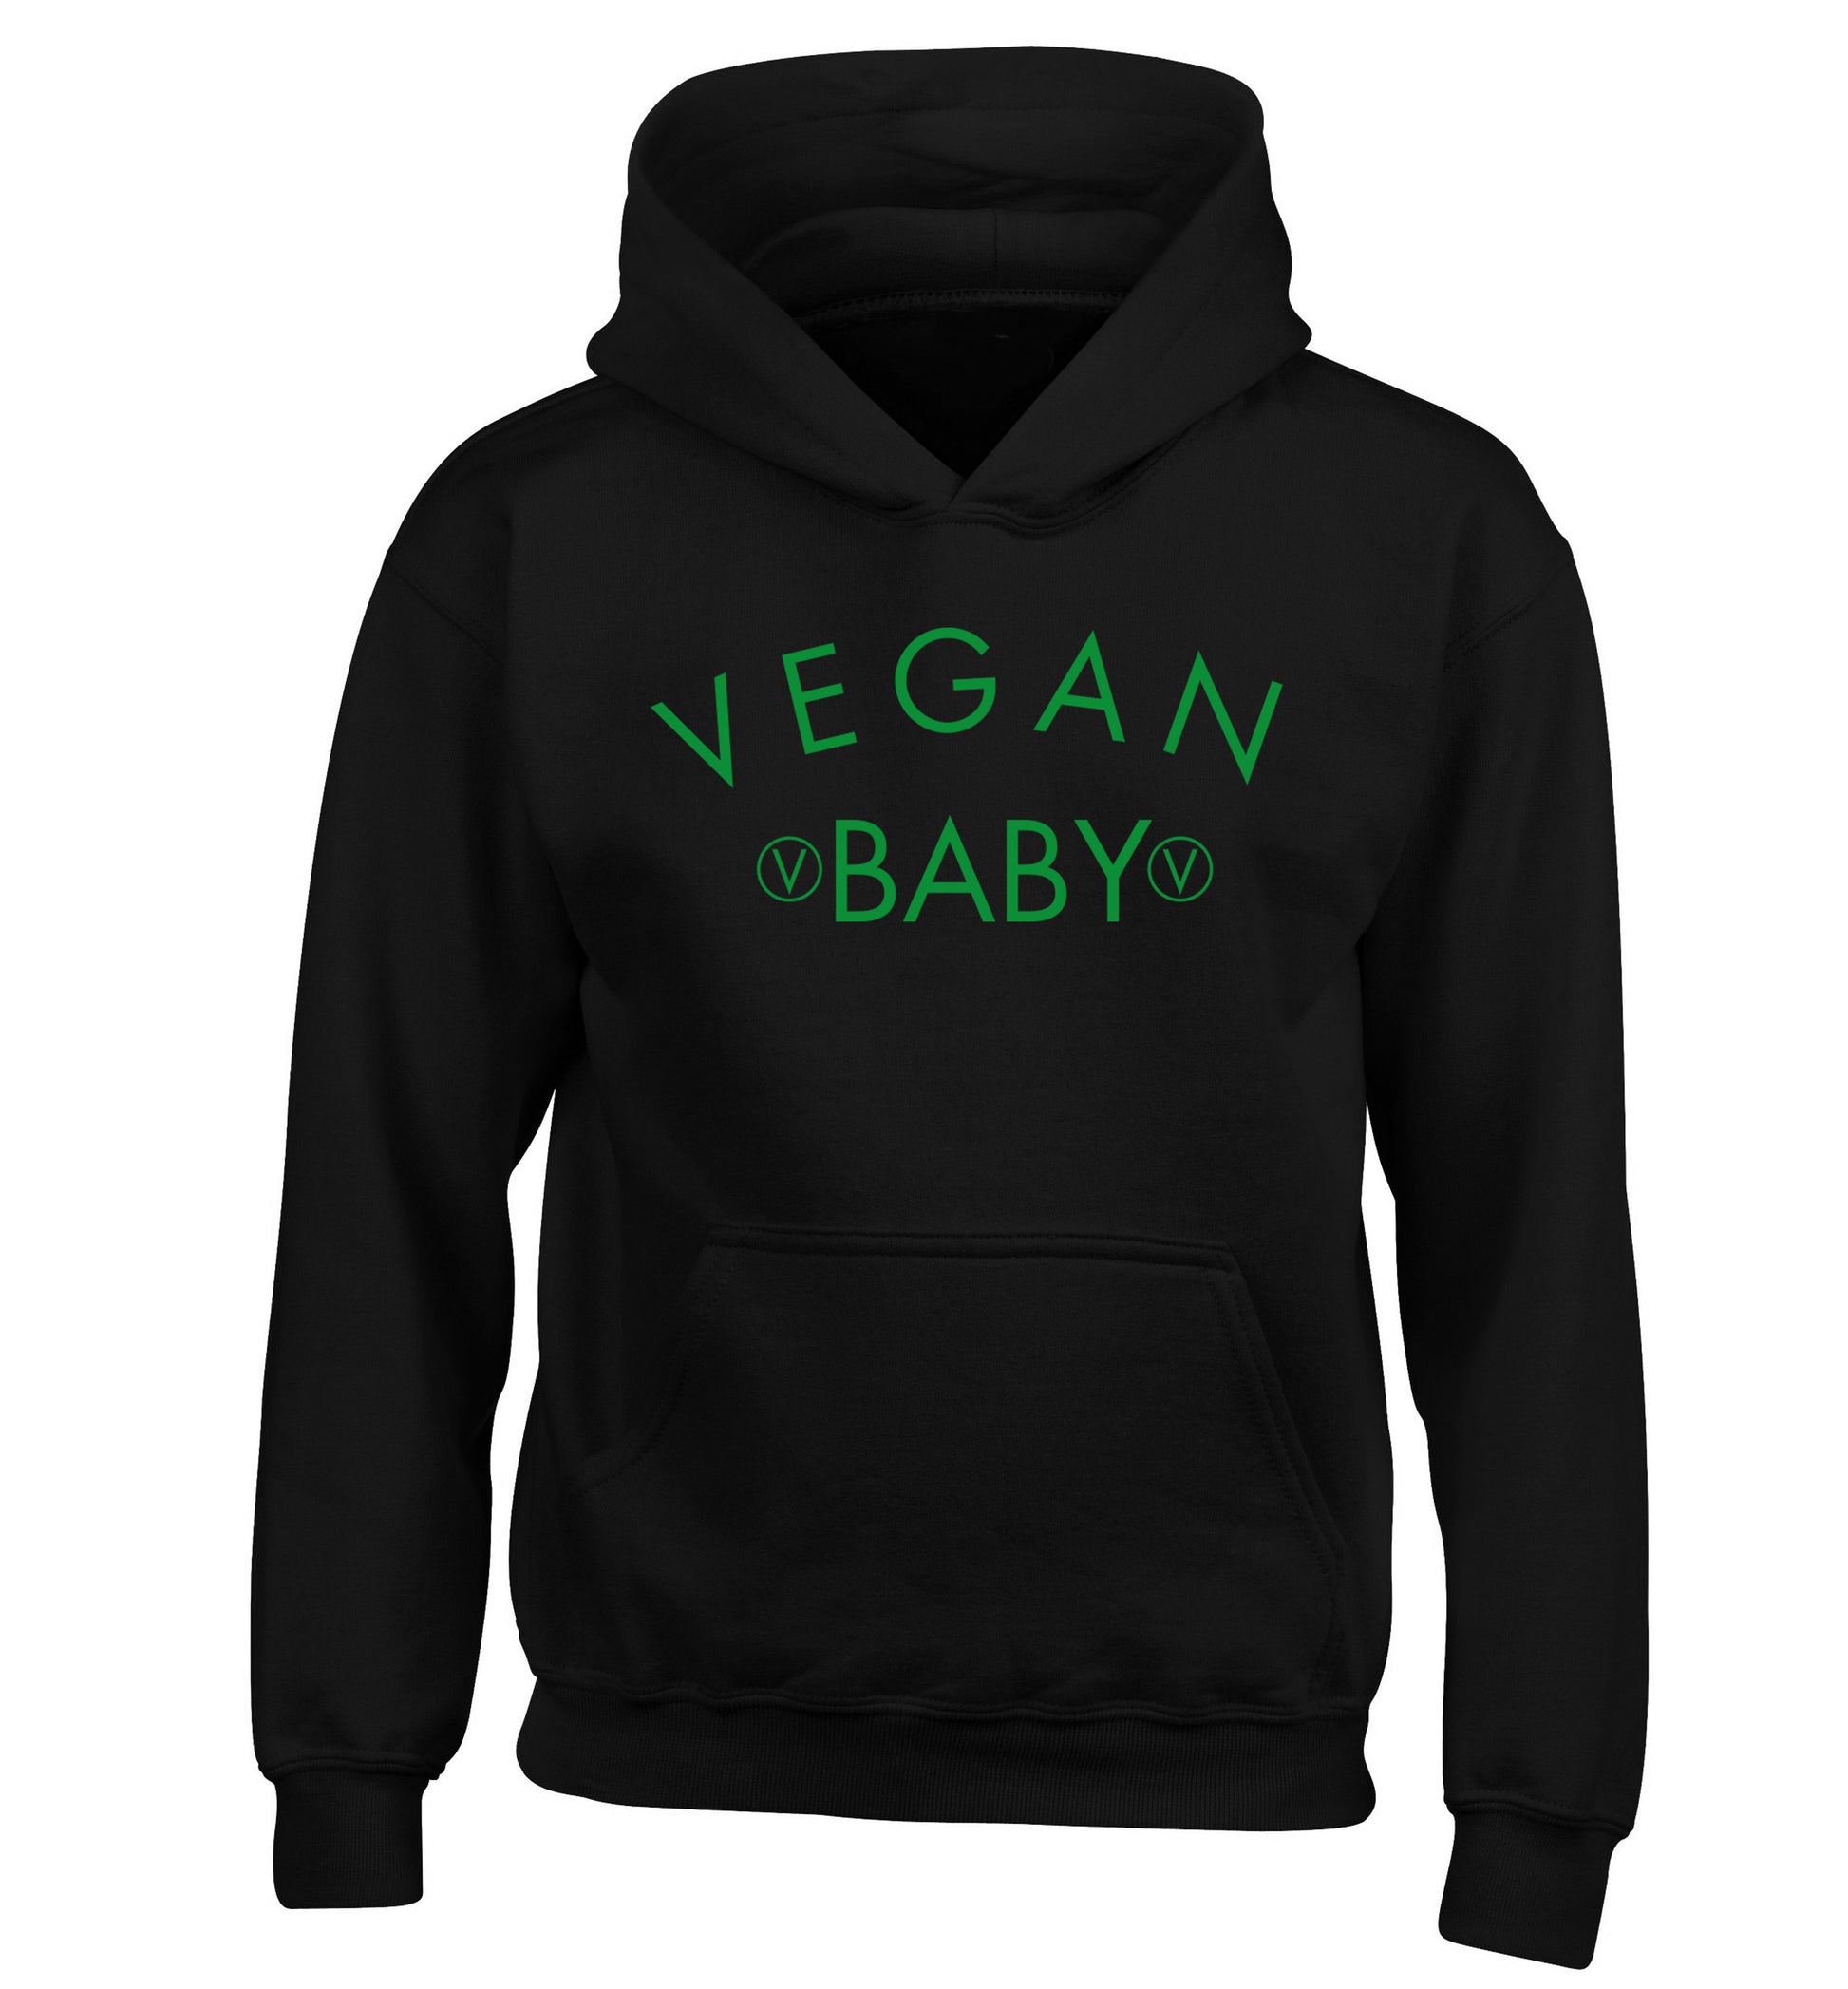 Vegan baby children's black hoodie 12-14 Years